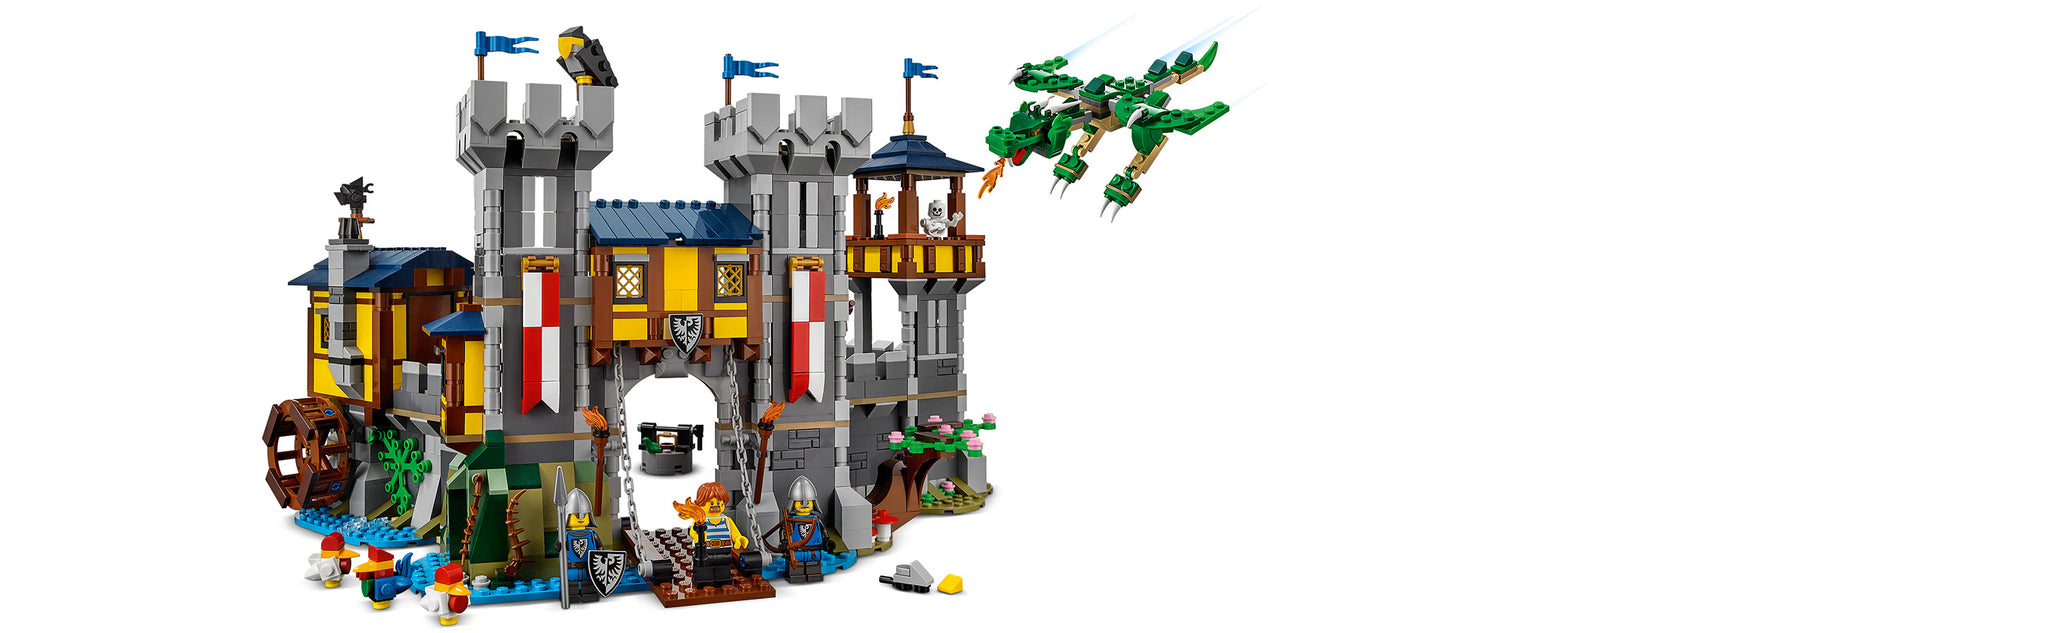 LEGO 31120 Mittelalterliche Burg, Burgturm oder Mittelaltermarkt